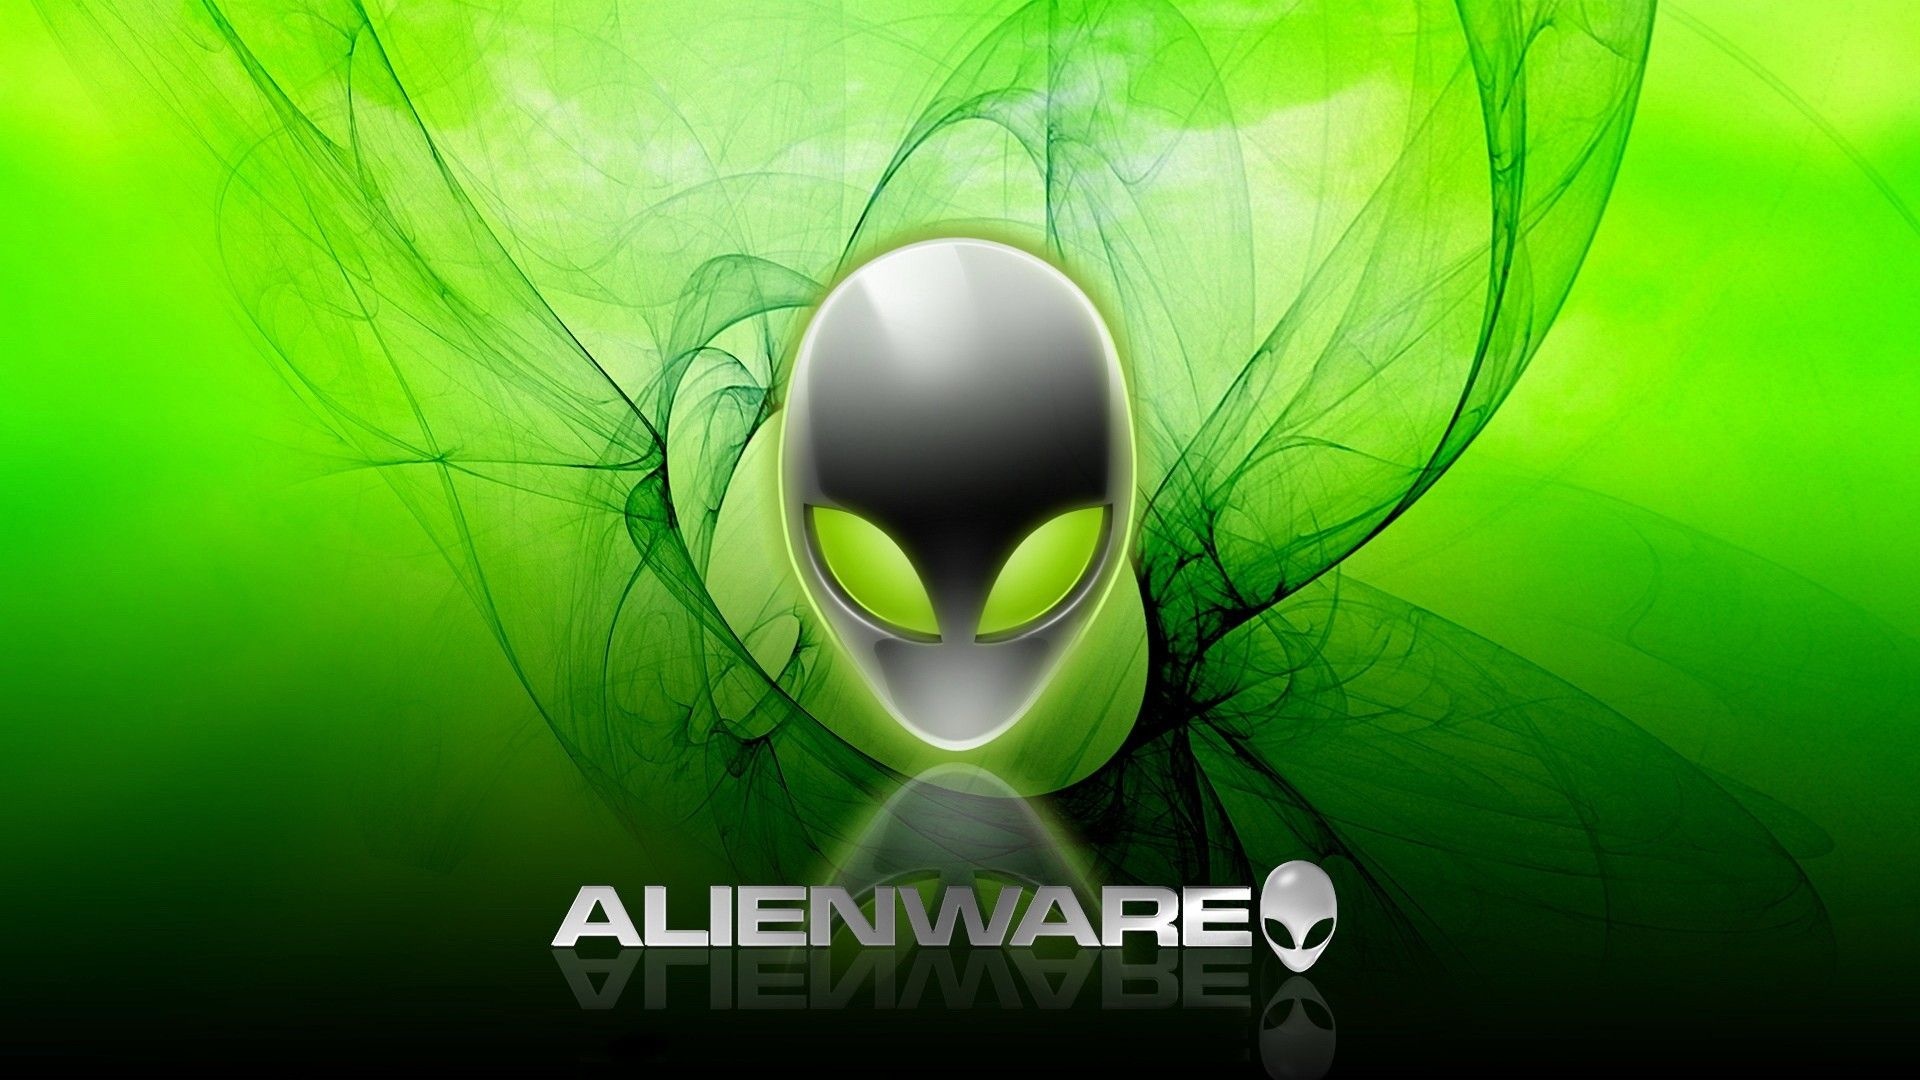 Alienware, Alienware desktop backgrounds, Customizable lighting, Gaming setups, 1920x1080 Full HD Desktop